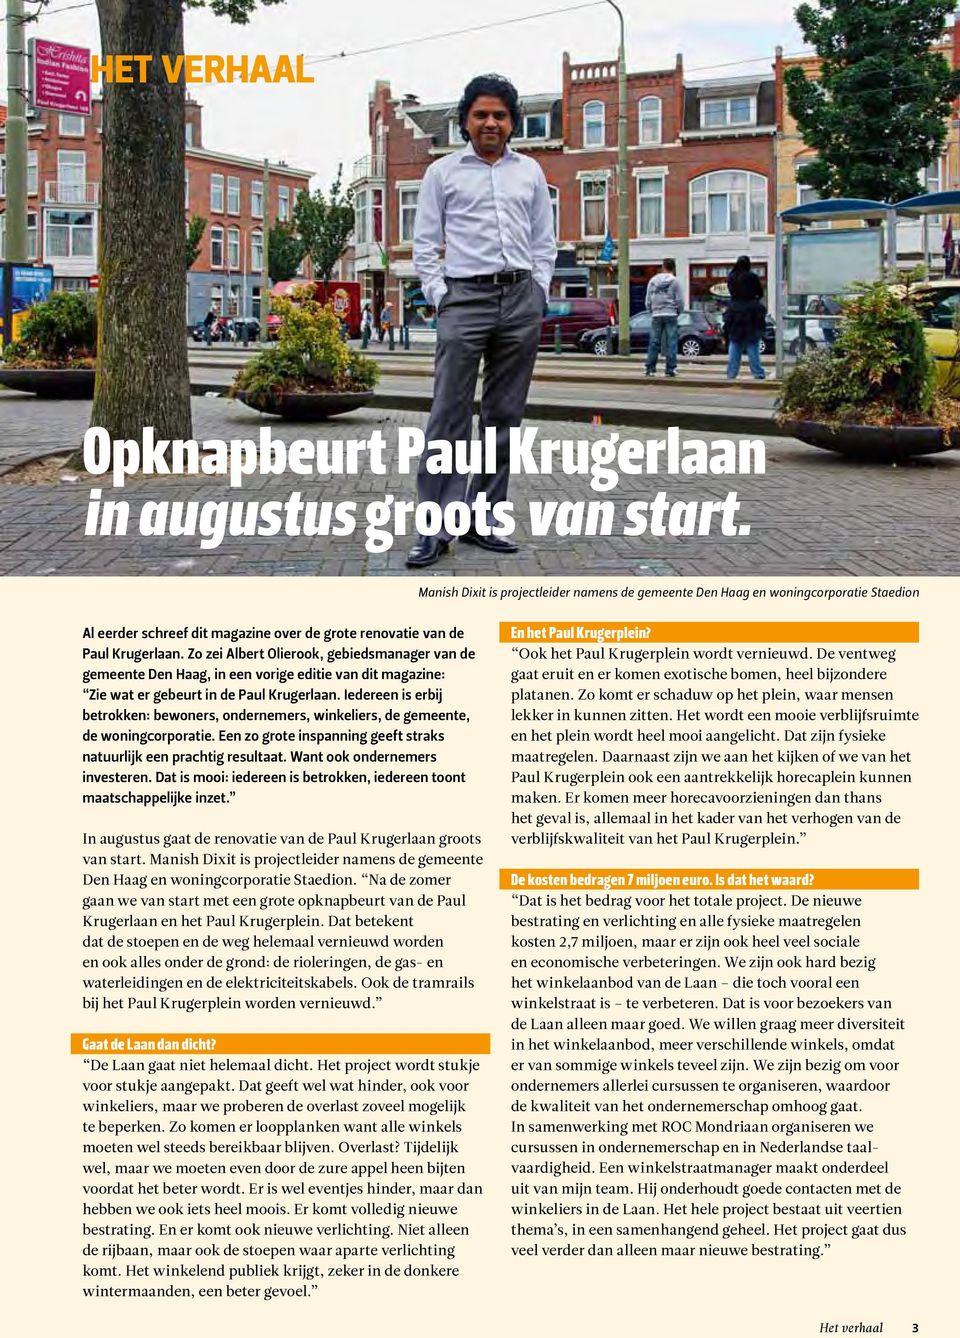 Zo zei Albert Olierook, gebiedsmanager van de gemeente Den Haag, in een vorige editie van dit magazine: Zie wat er gebeurt in de Paul Krugerlaan.